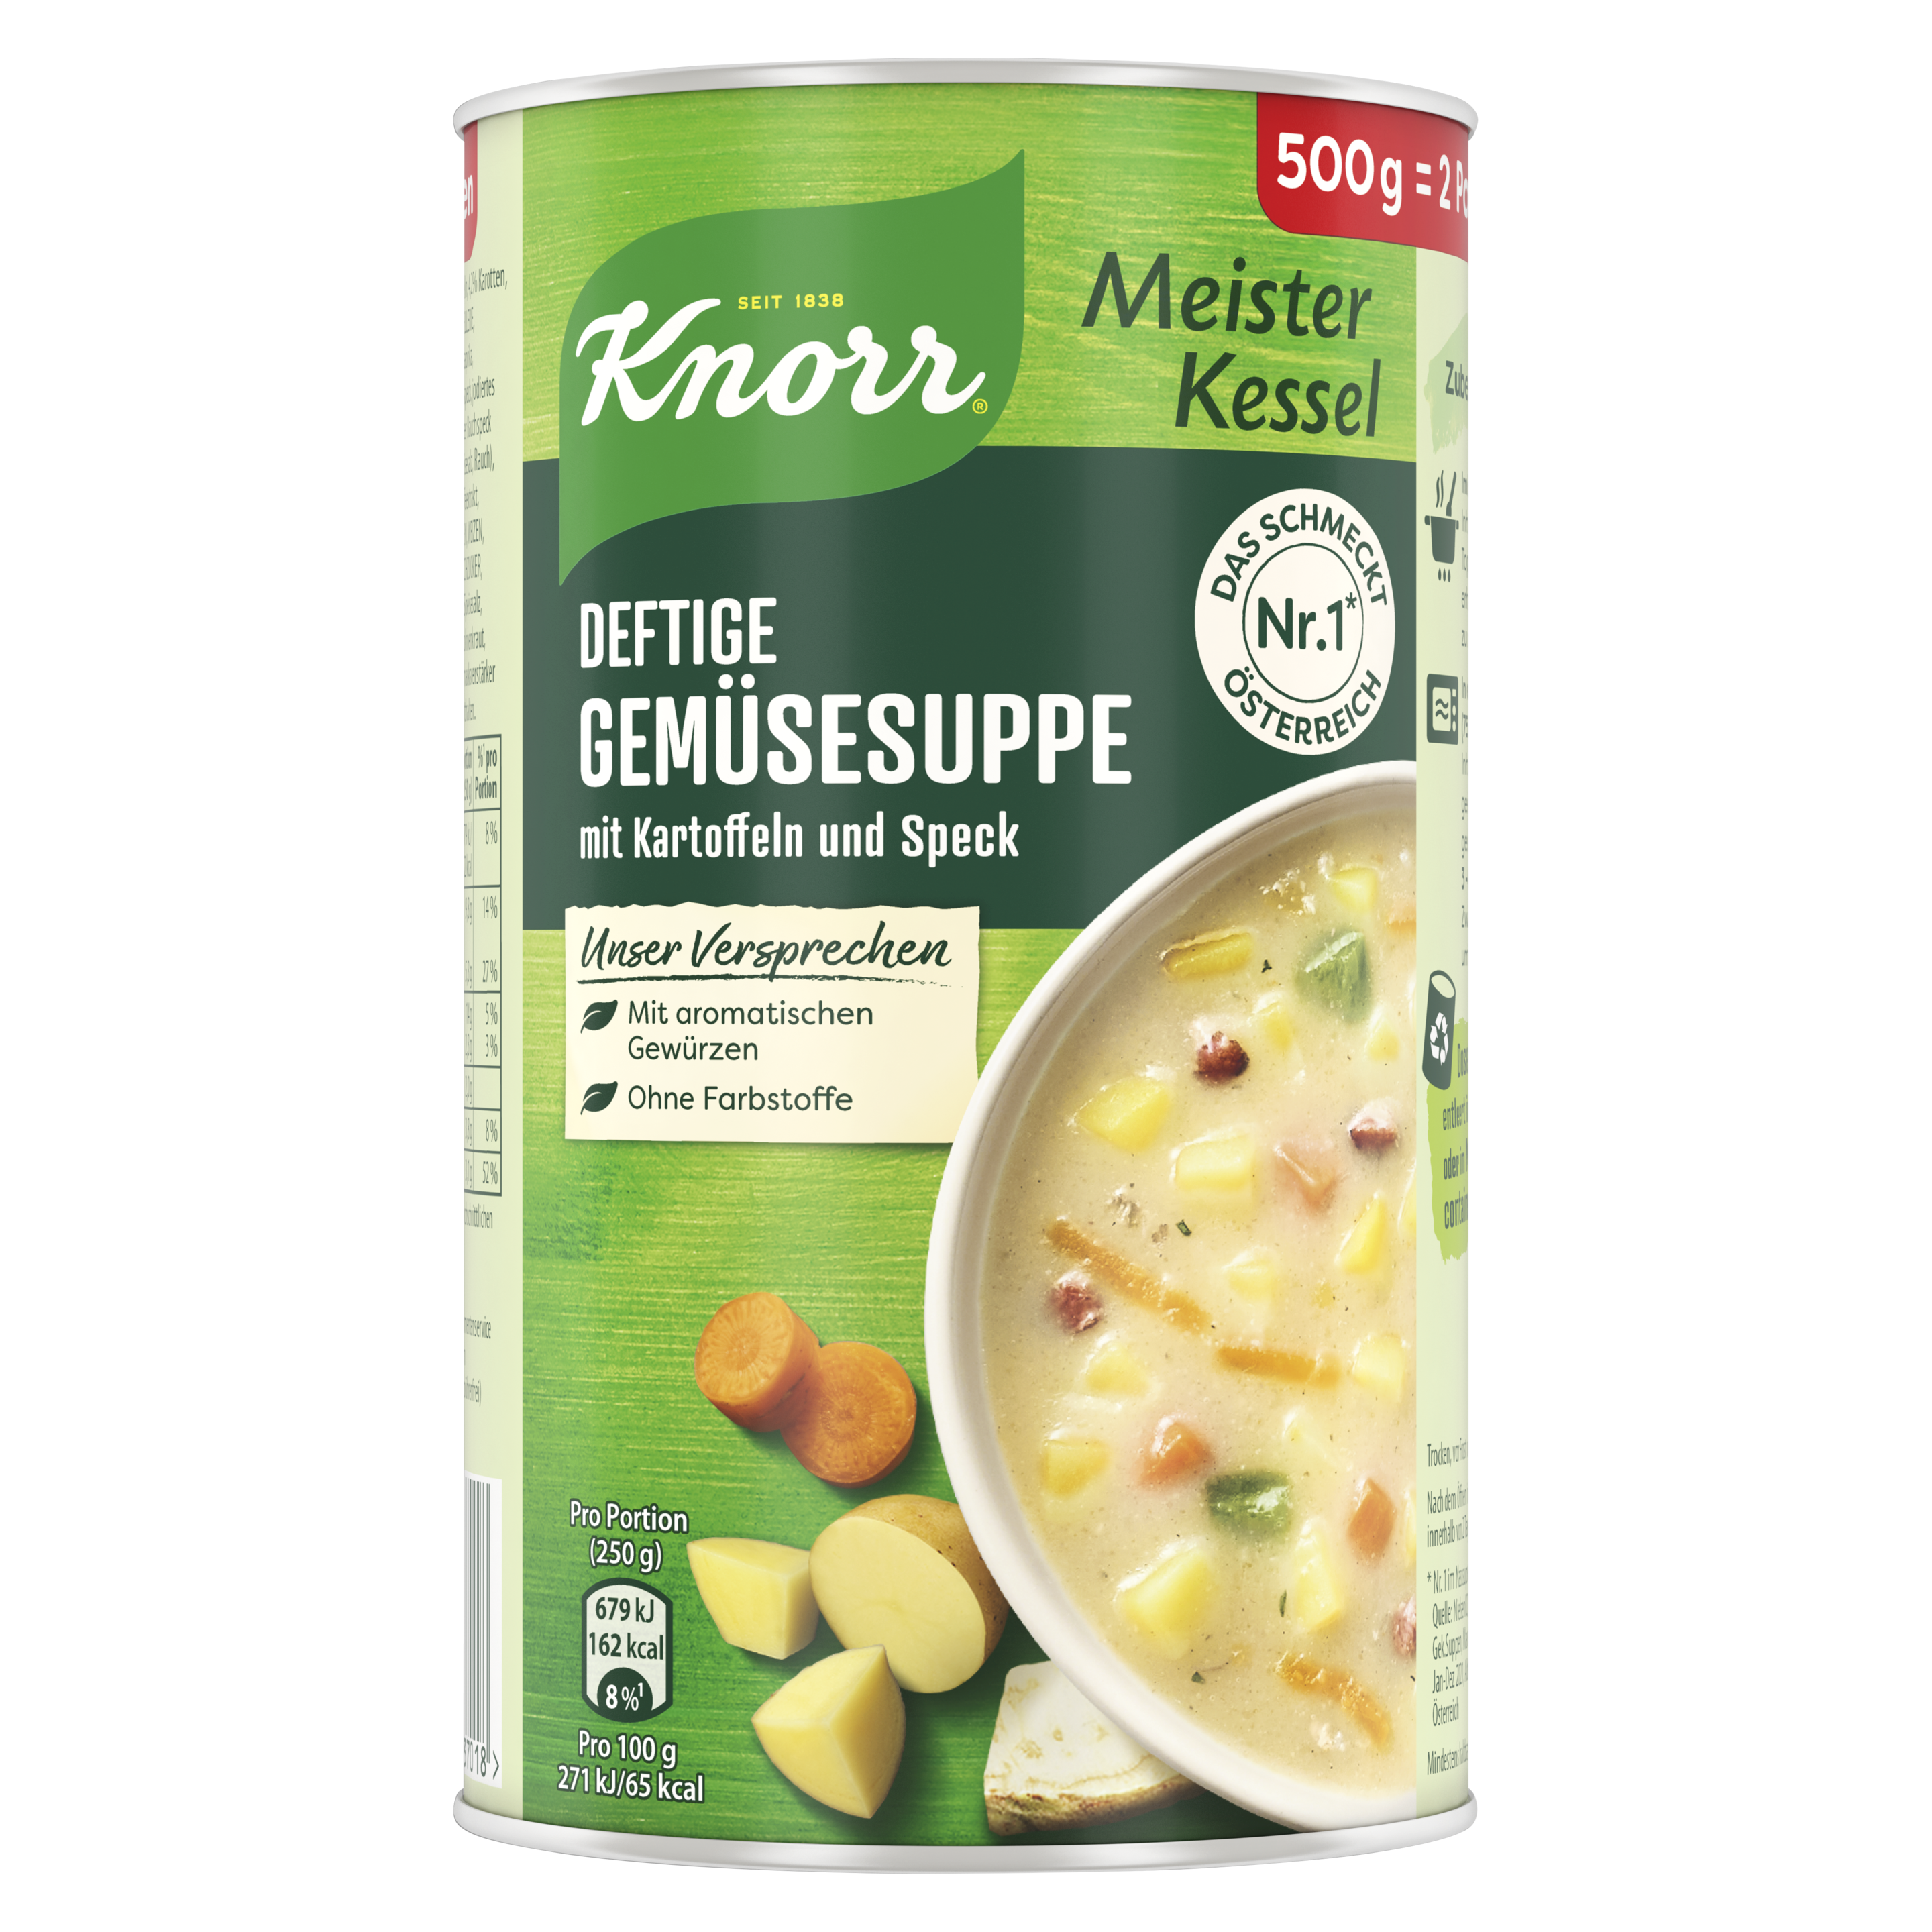 Knorr Meisterkessel Deftige Gemüse Suppe 2 Teller